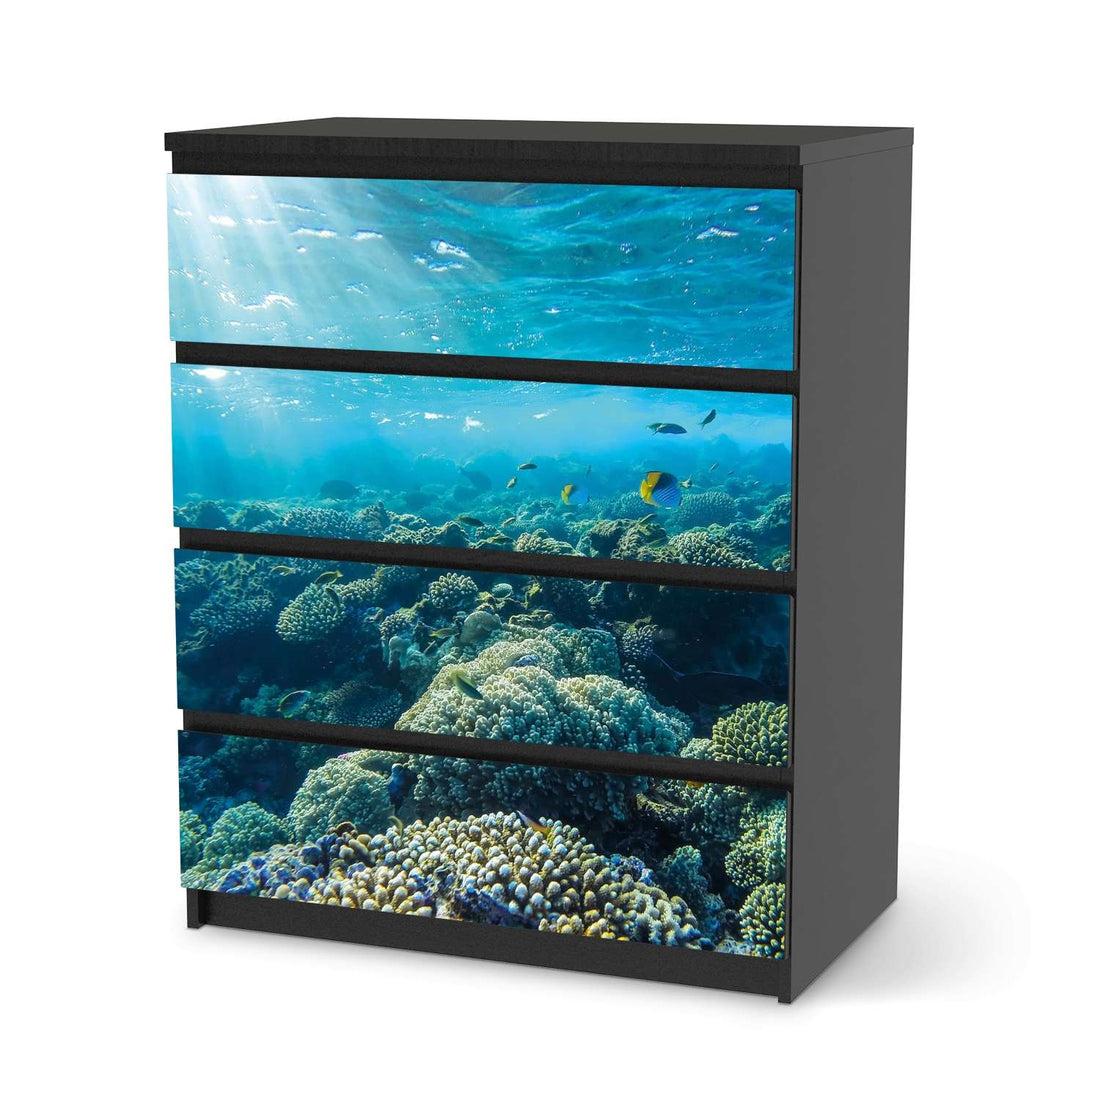 Folie für Möbel Underwater World - IKEA Malm Kommode 4 Schubladen - schwarz